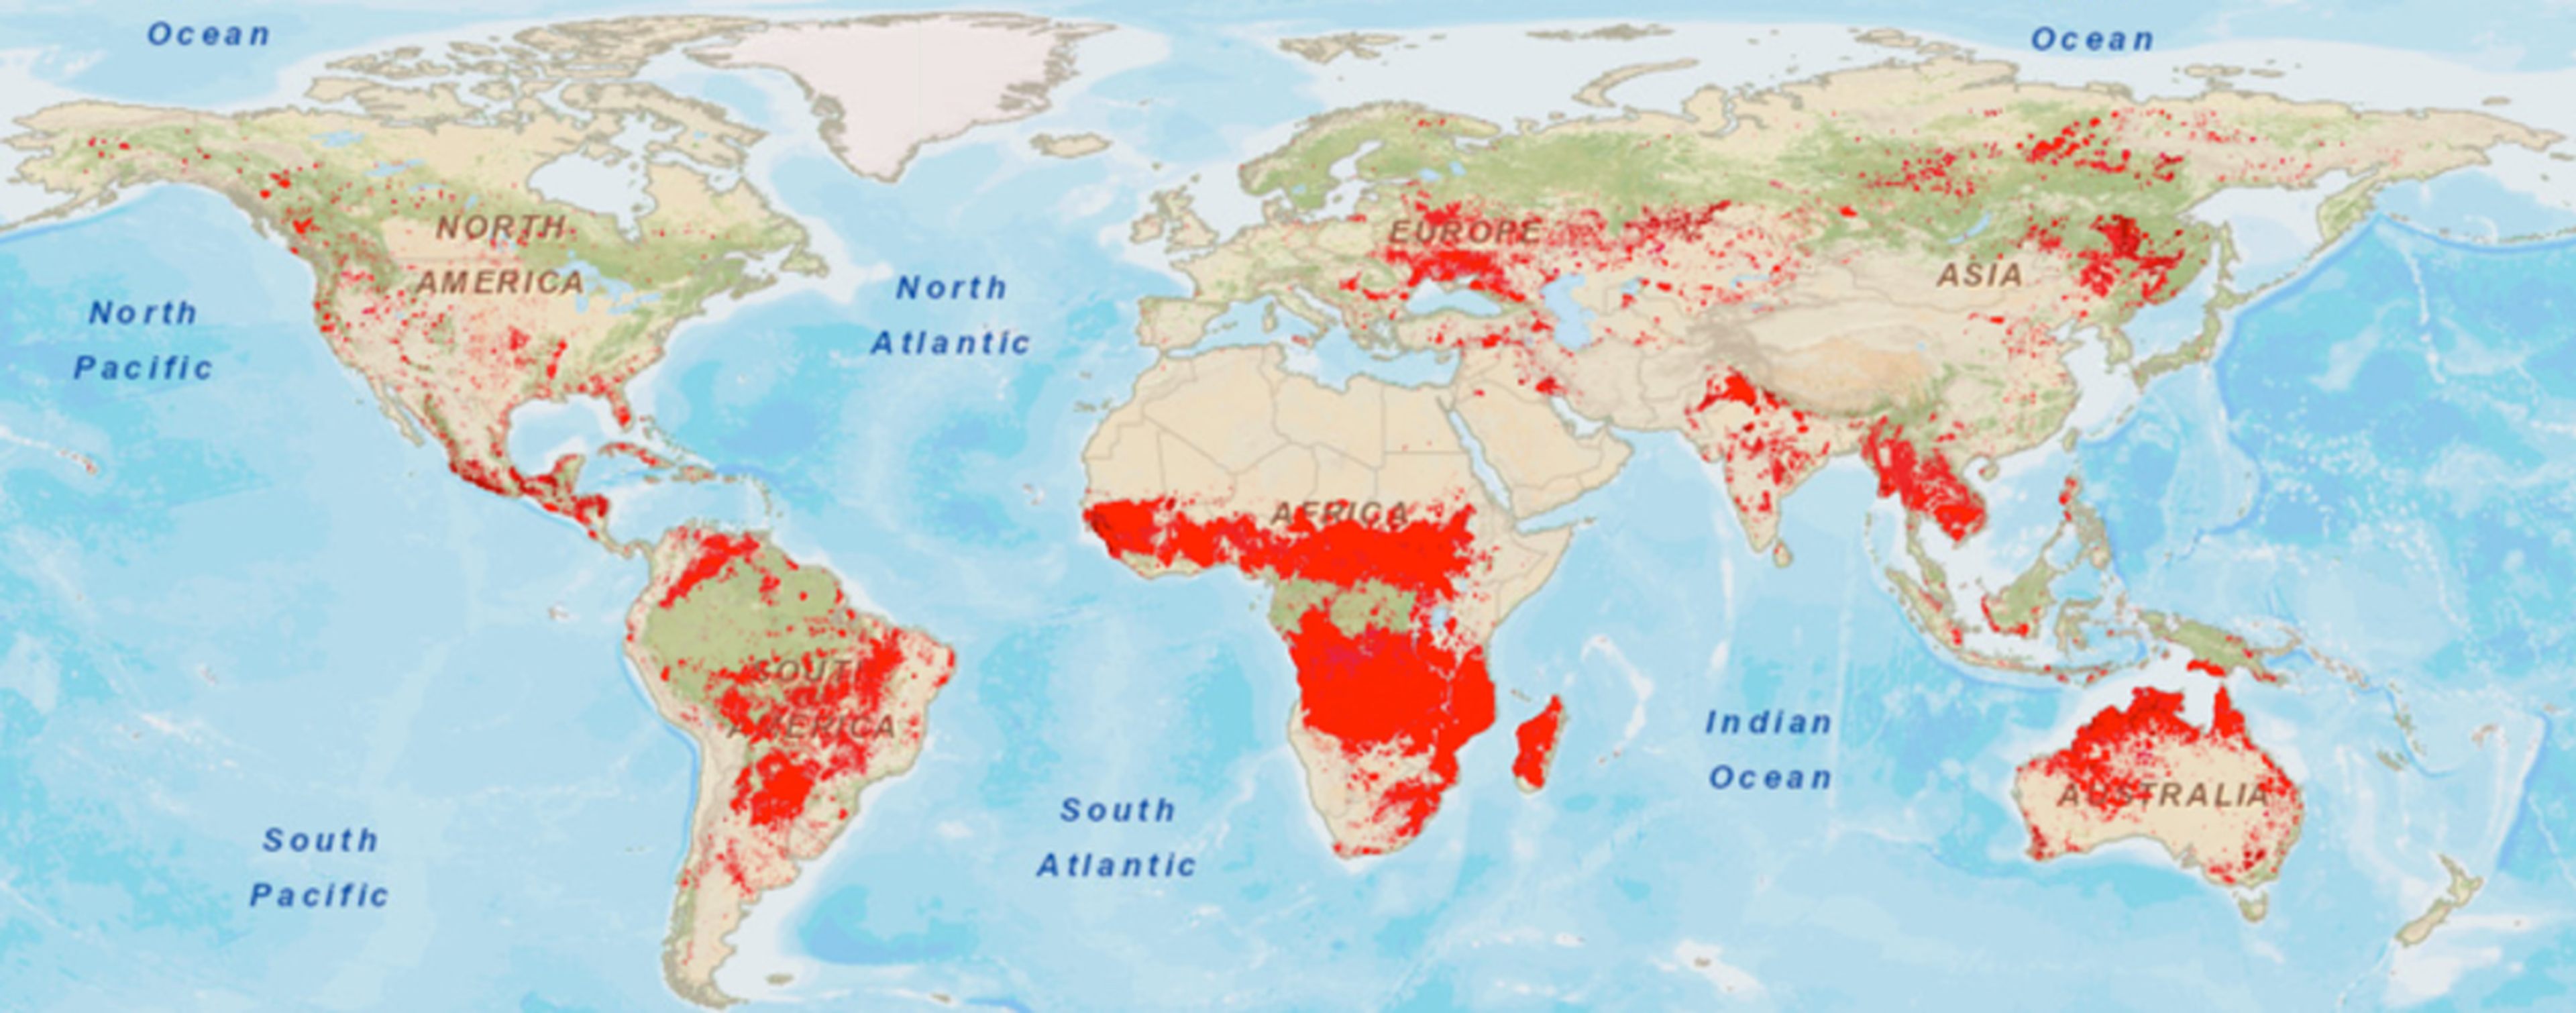 Área quemada en el mundo durante 2018 según el satélite MODIS de la NASA.